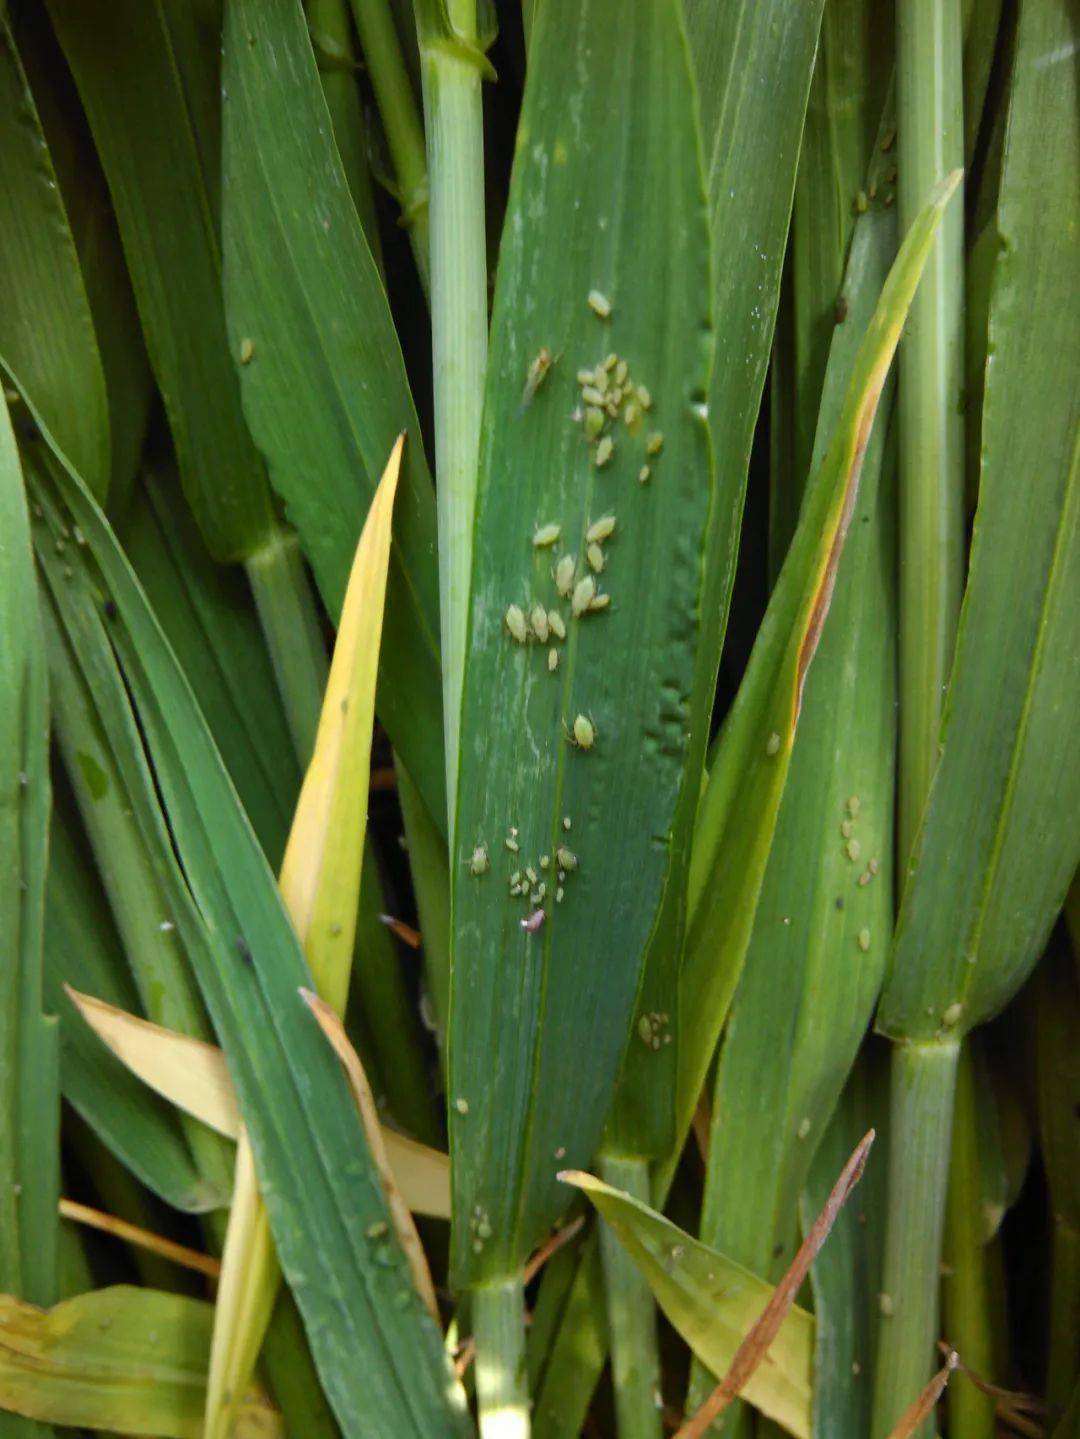 小麦蚜虫严重的时候,会造成小麦灌浆不足,千粒重下降及引起籽粒营养